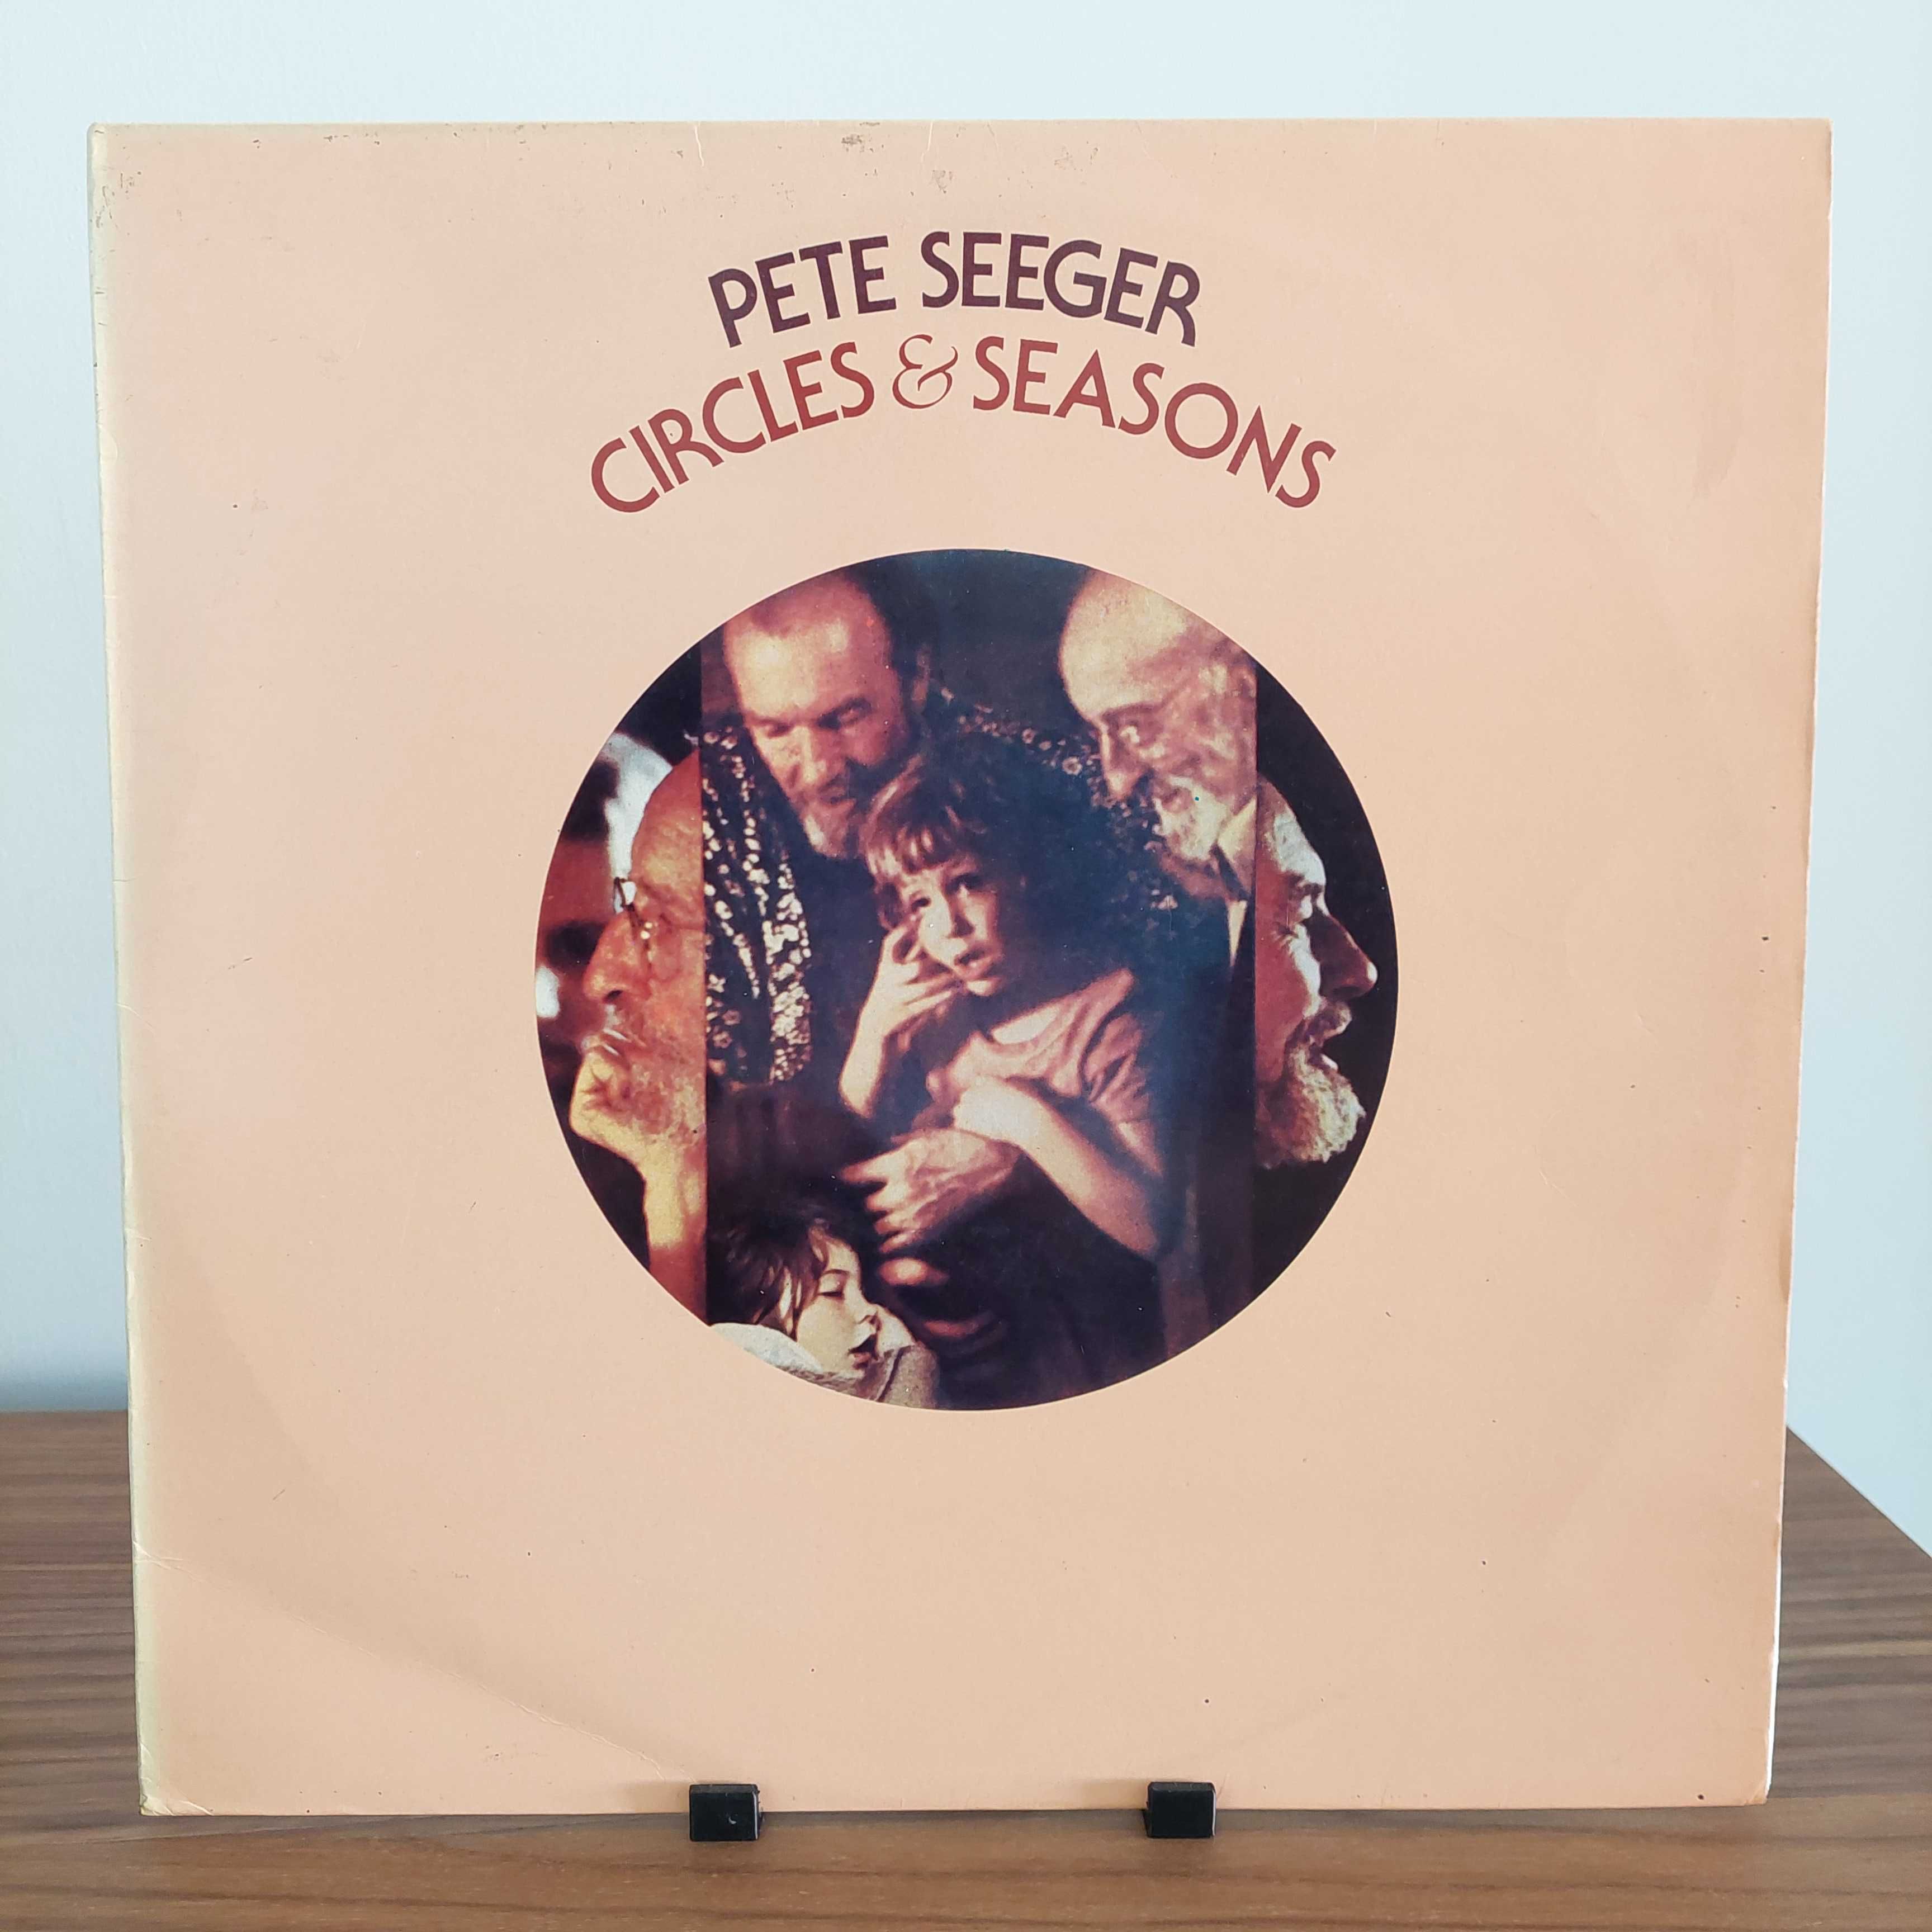 Discos LP Glenn Miller, Pete Seeger, Folk, Leon Russell